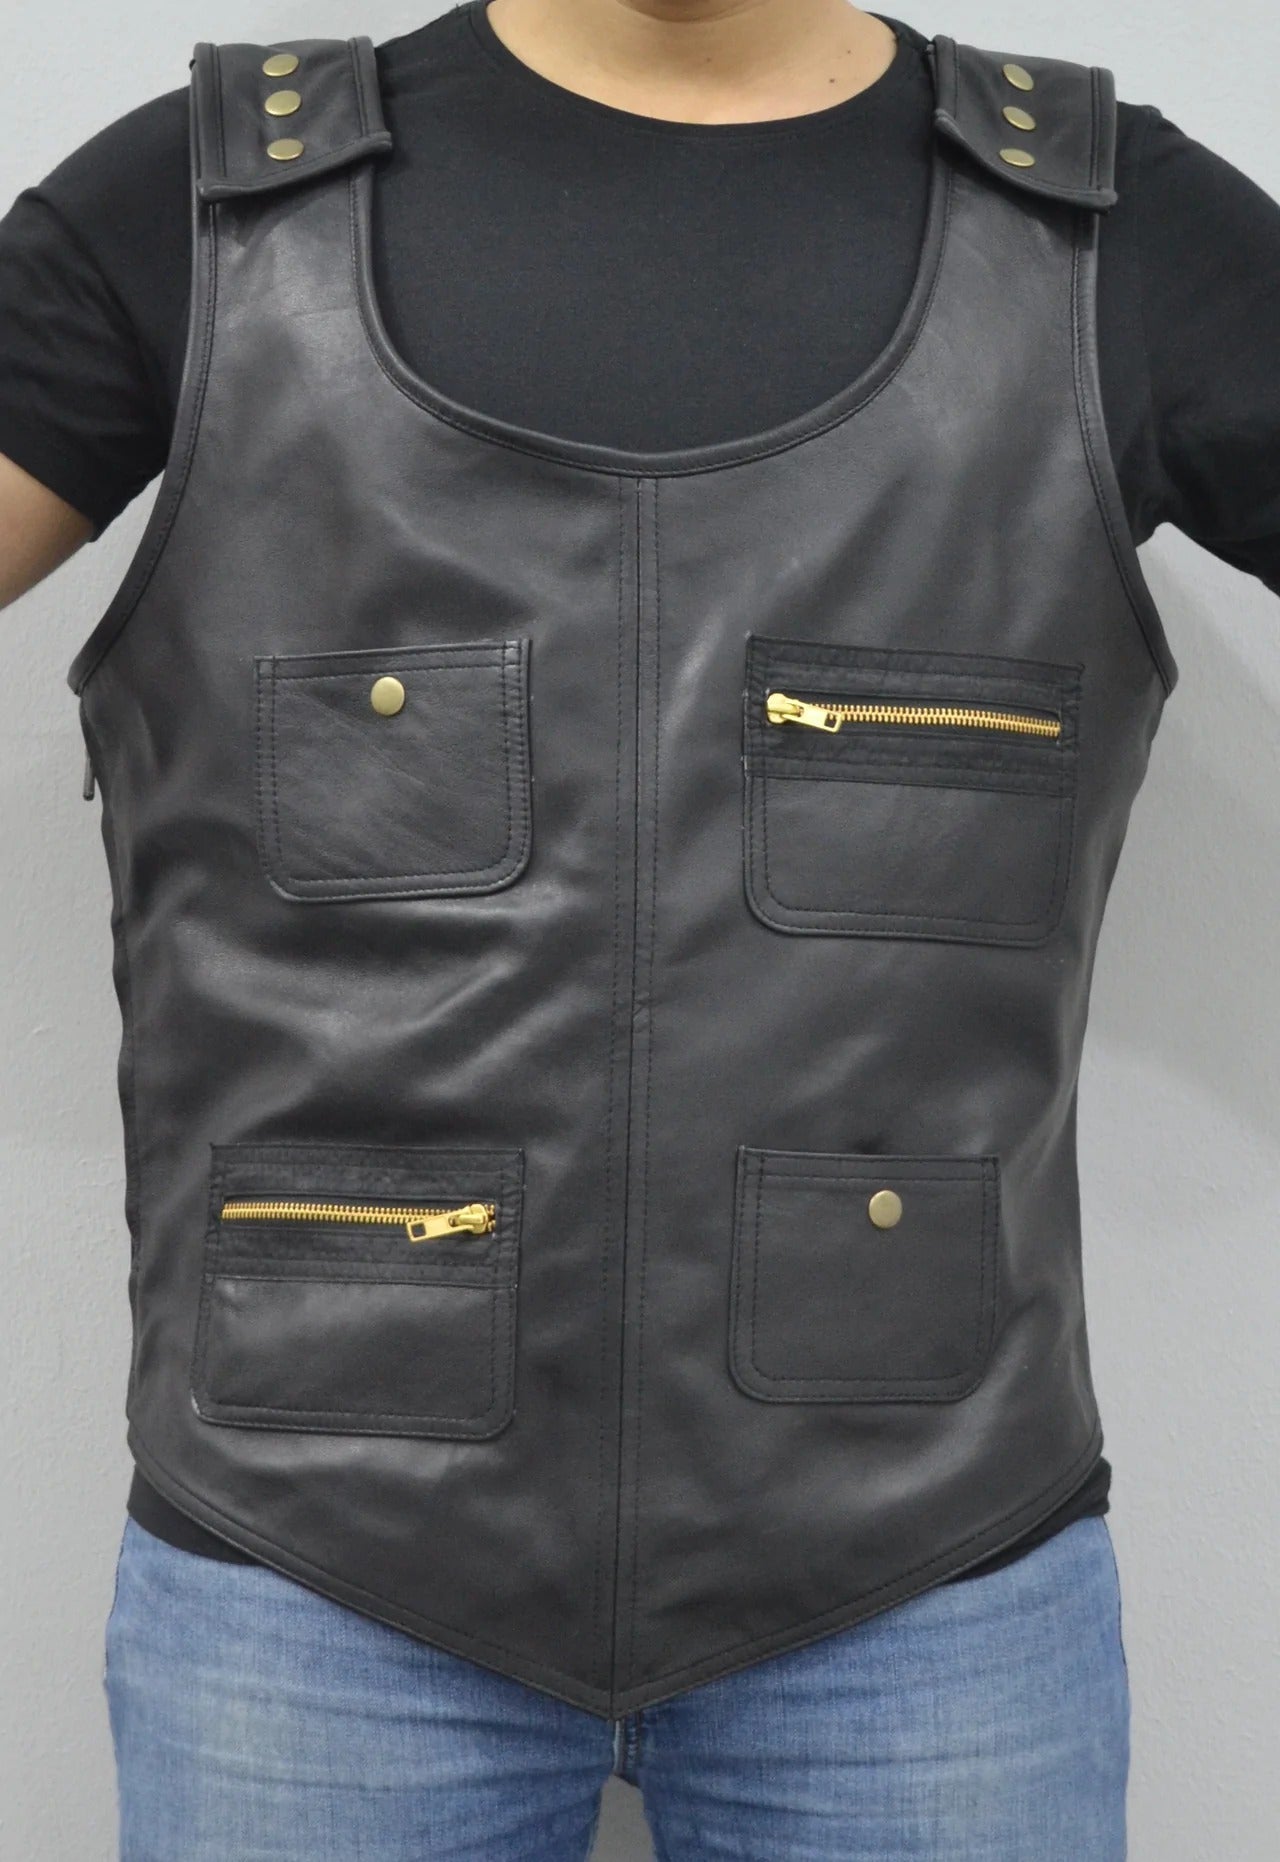 Men's Black Rapper Style Strap Lambskin Leather Vest